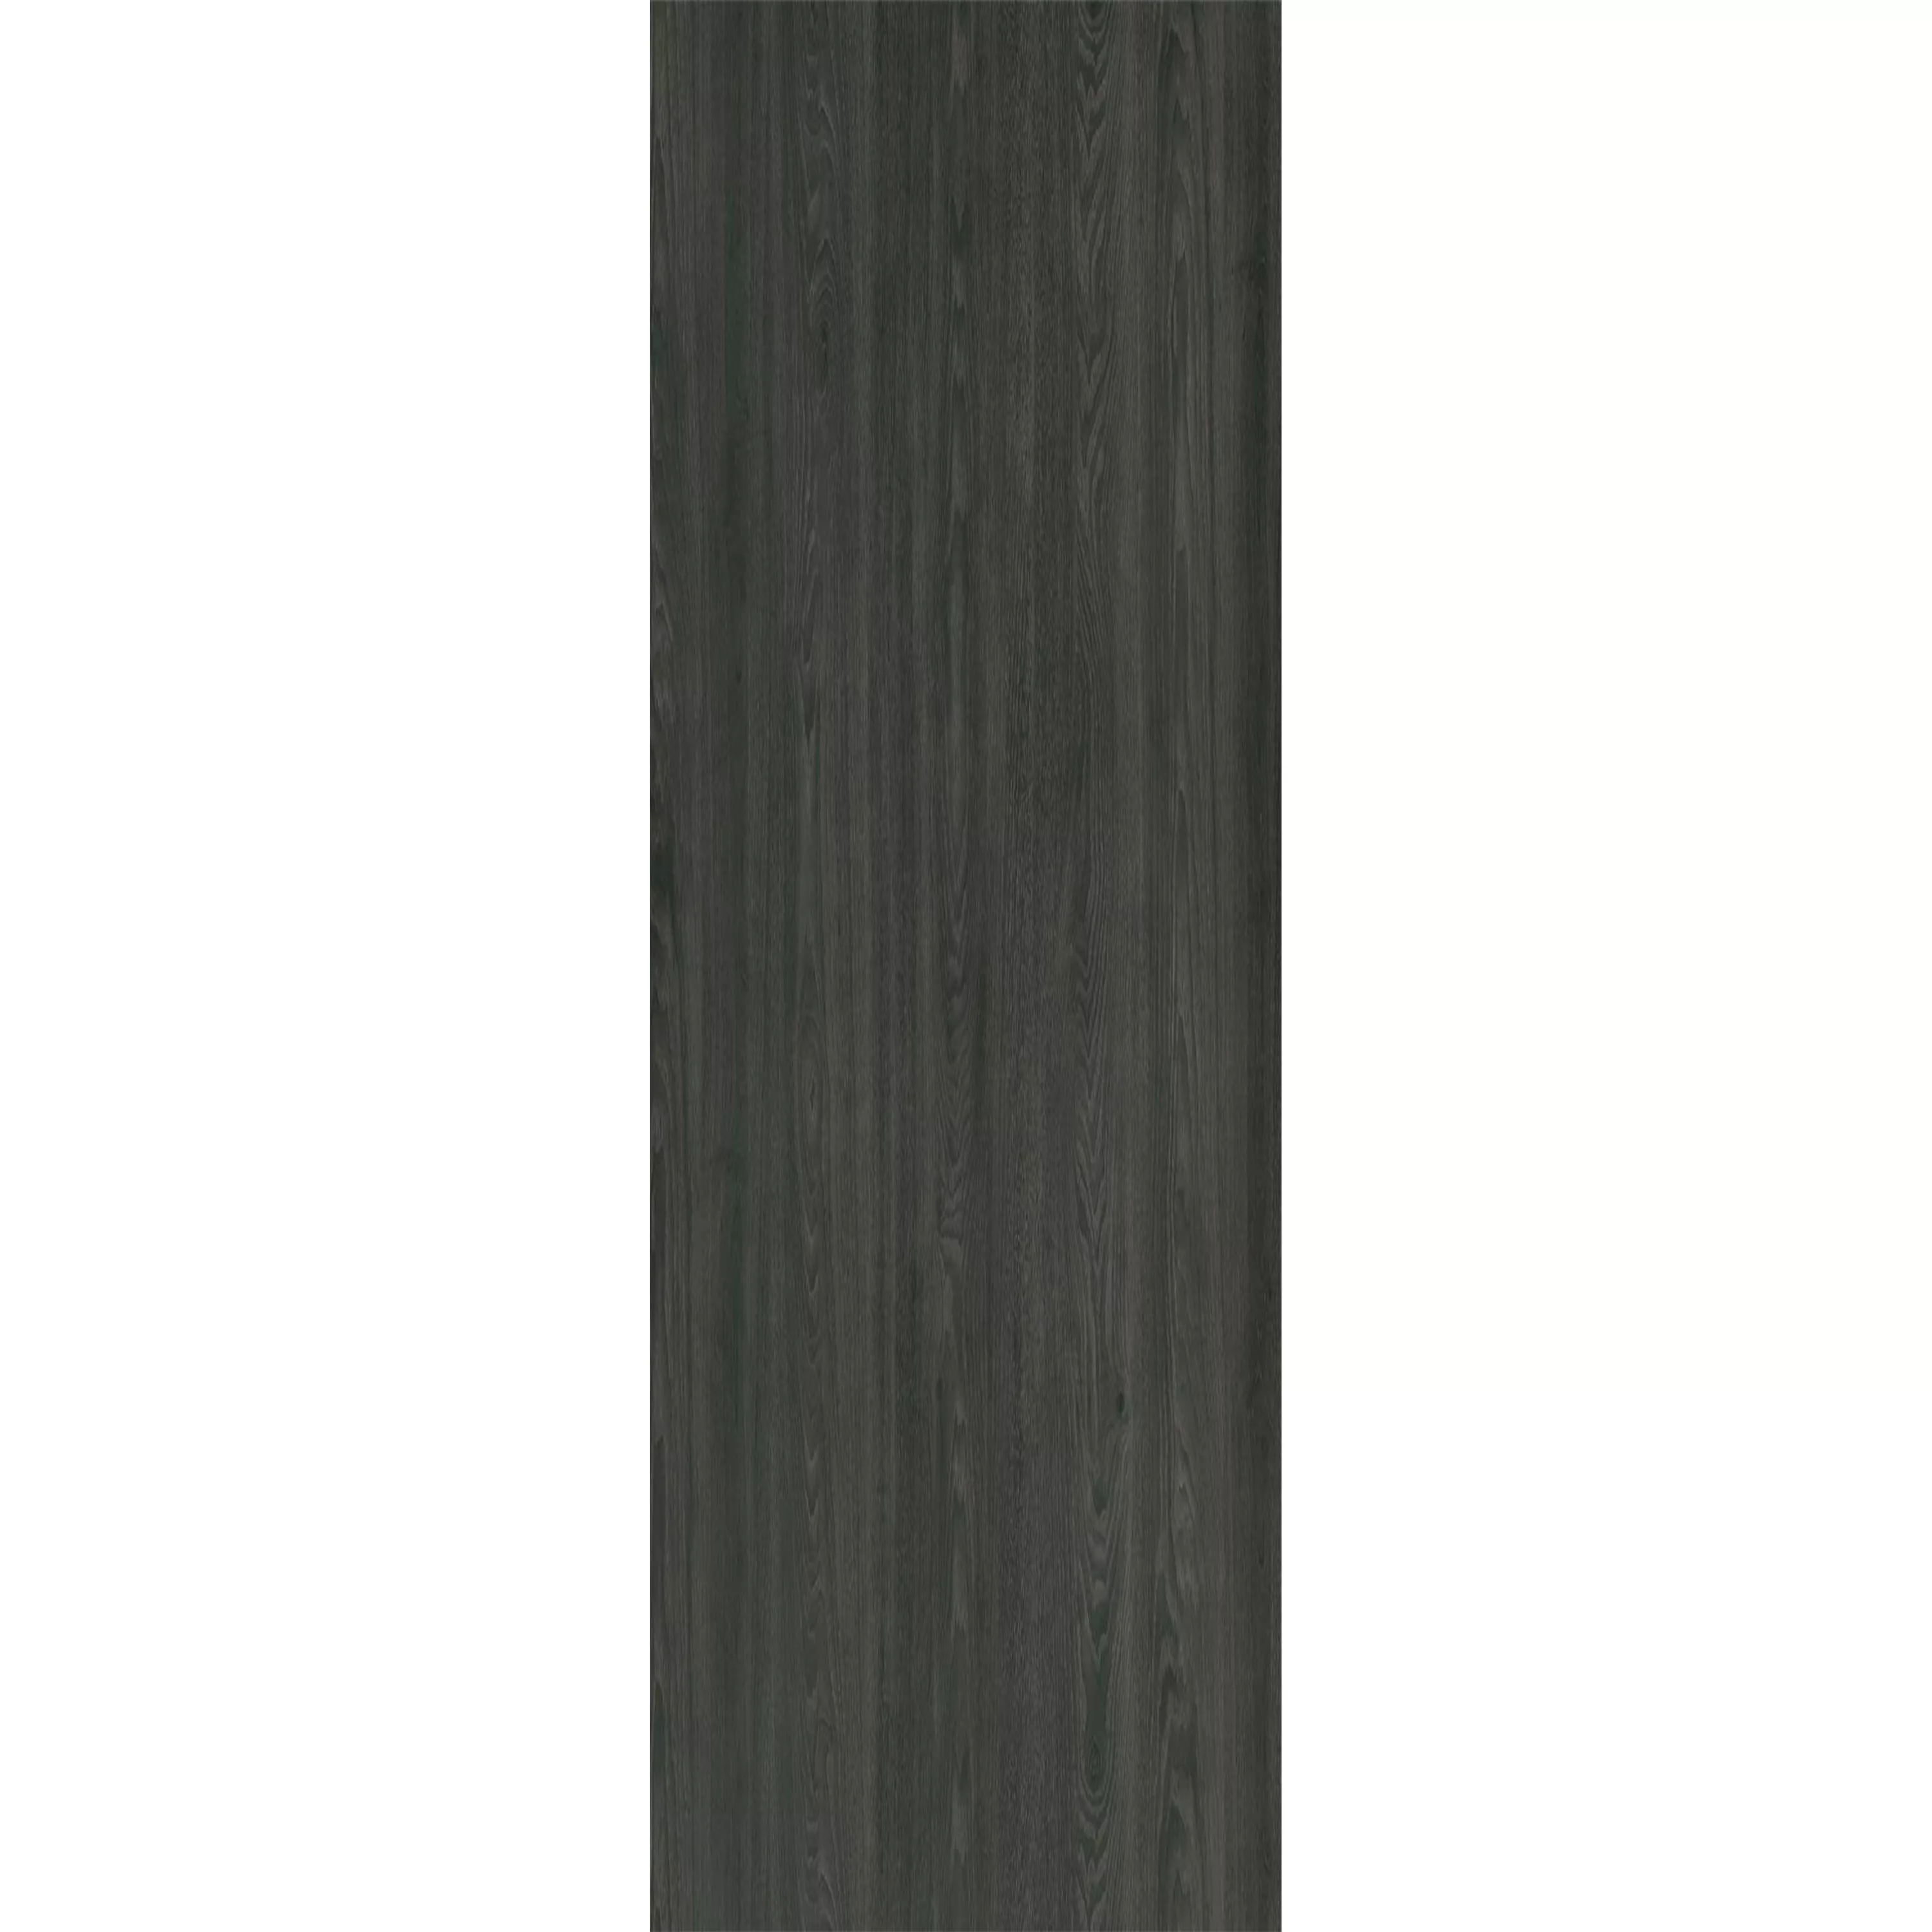 Piastrelle In Vinile Sistema A Clic Blackwood Antracite 17,2x121cm